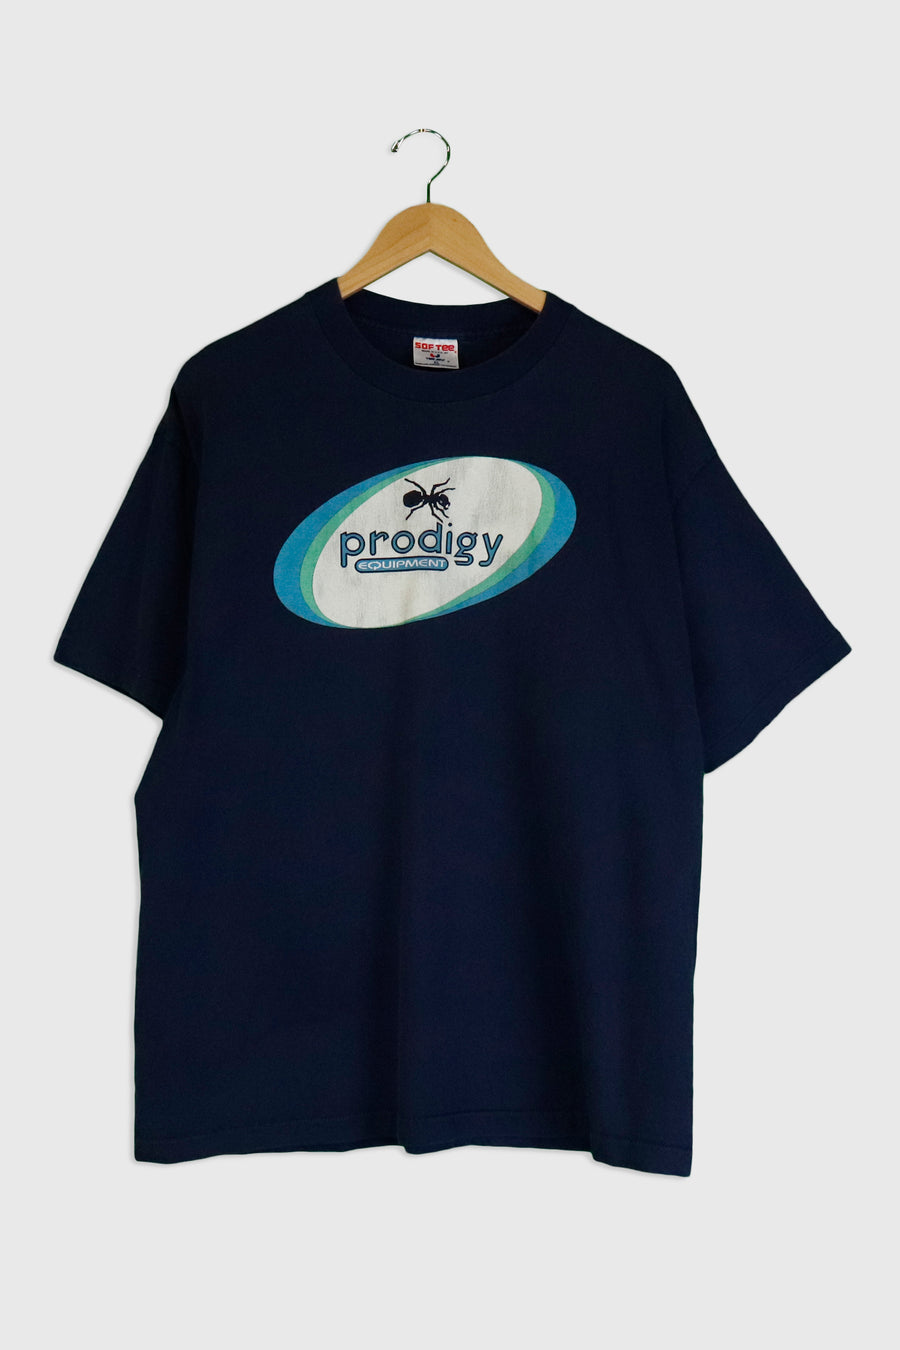 Vintage Prodigy Equipment Vinyl T Shirt Sz XL